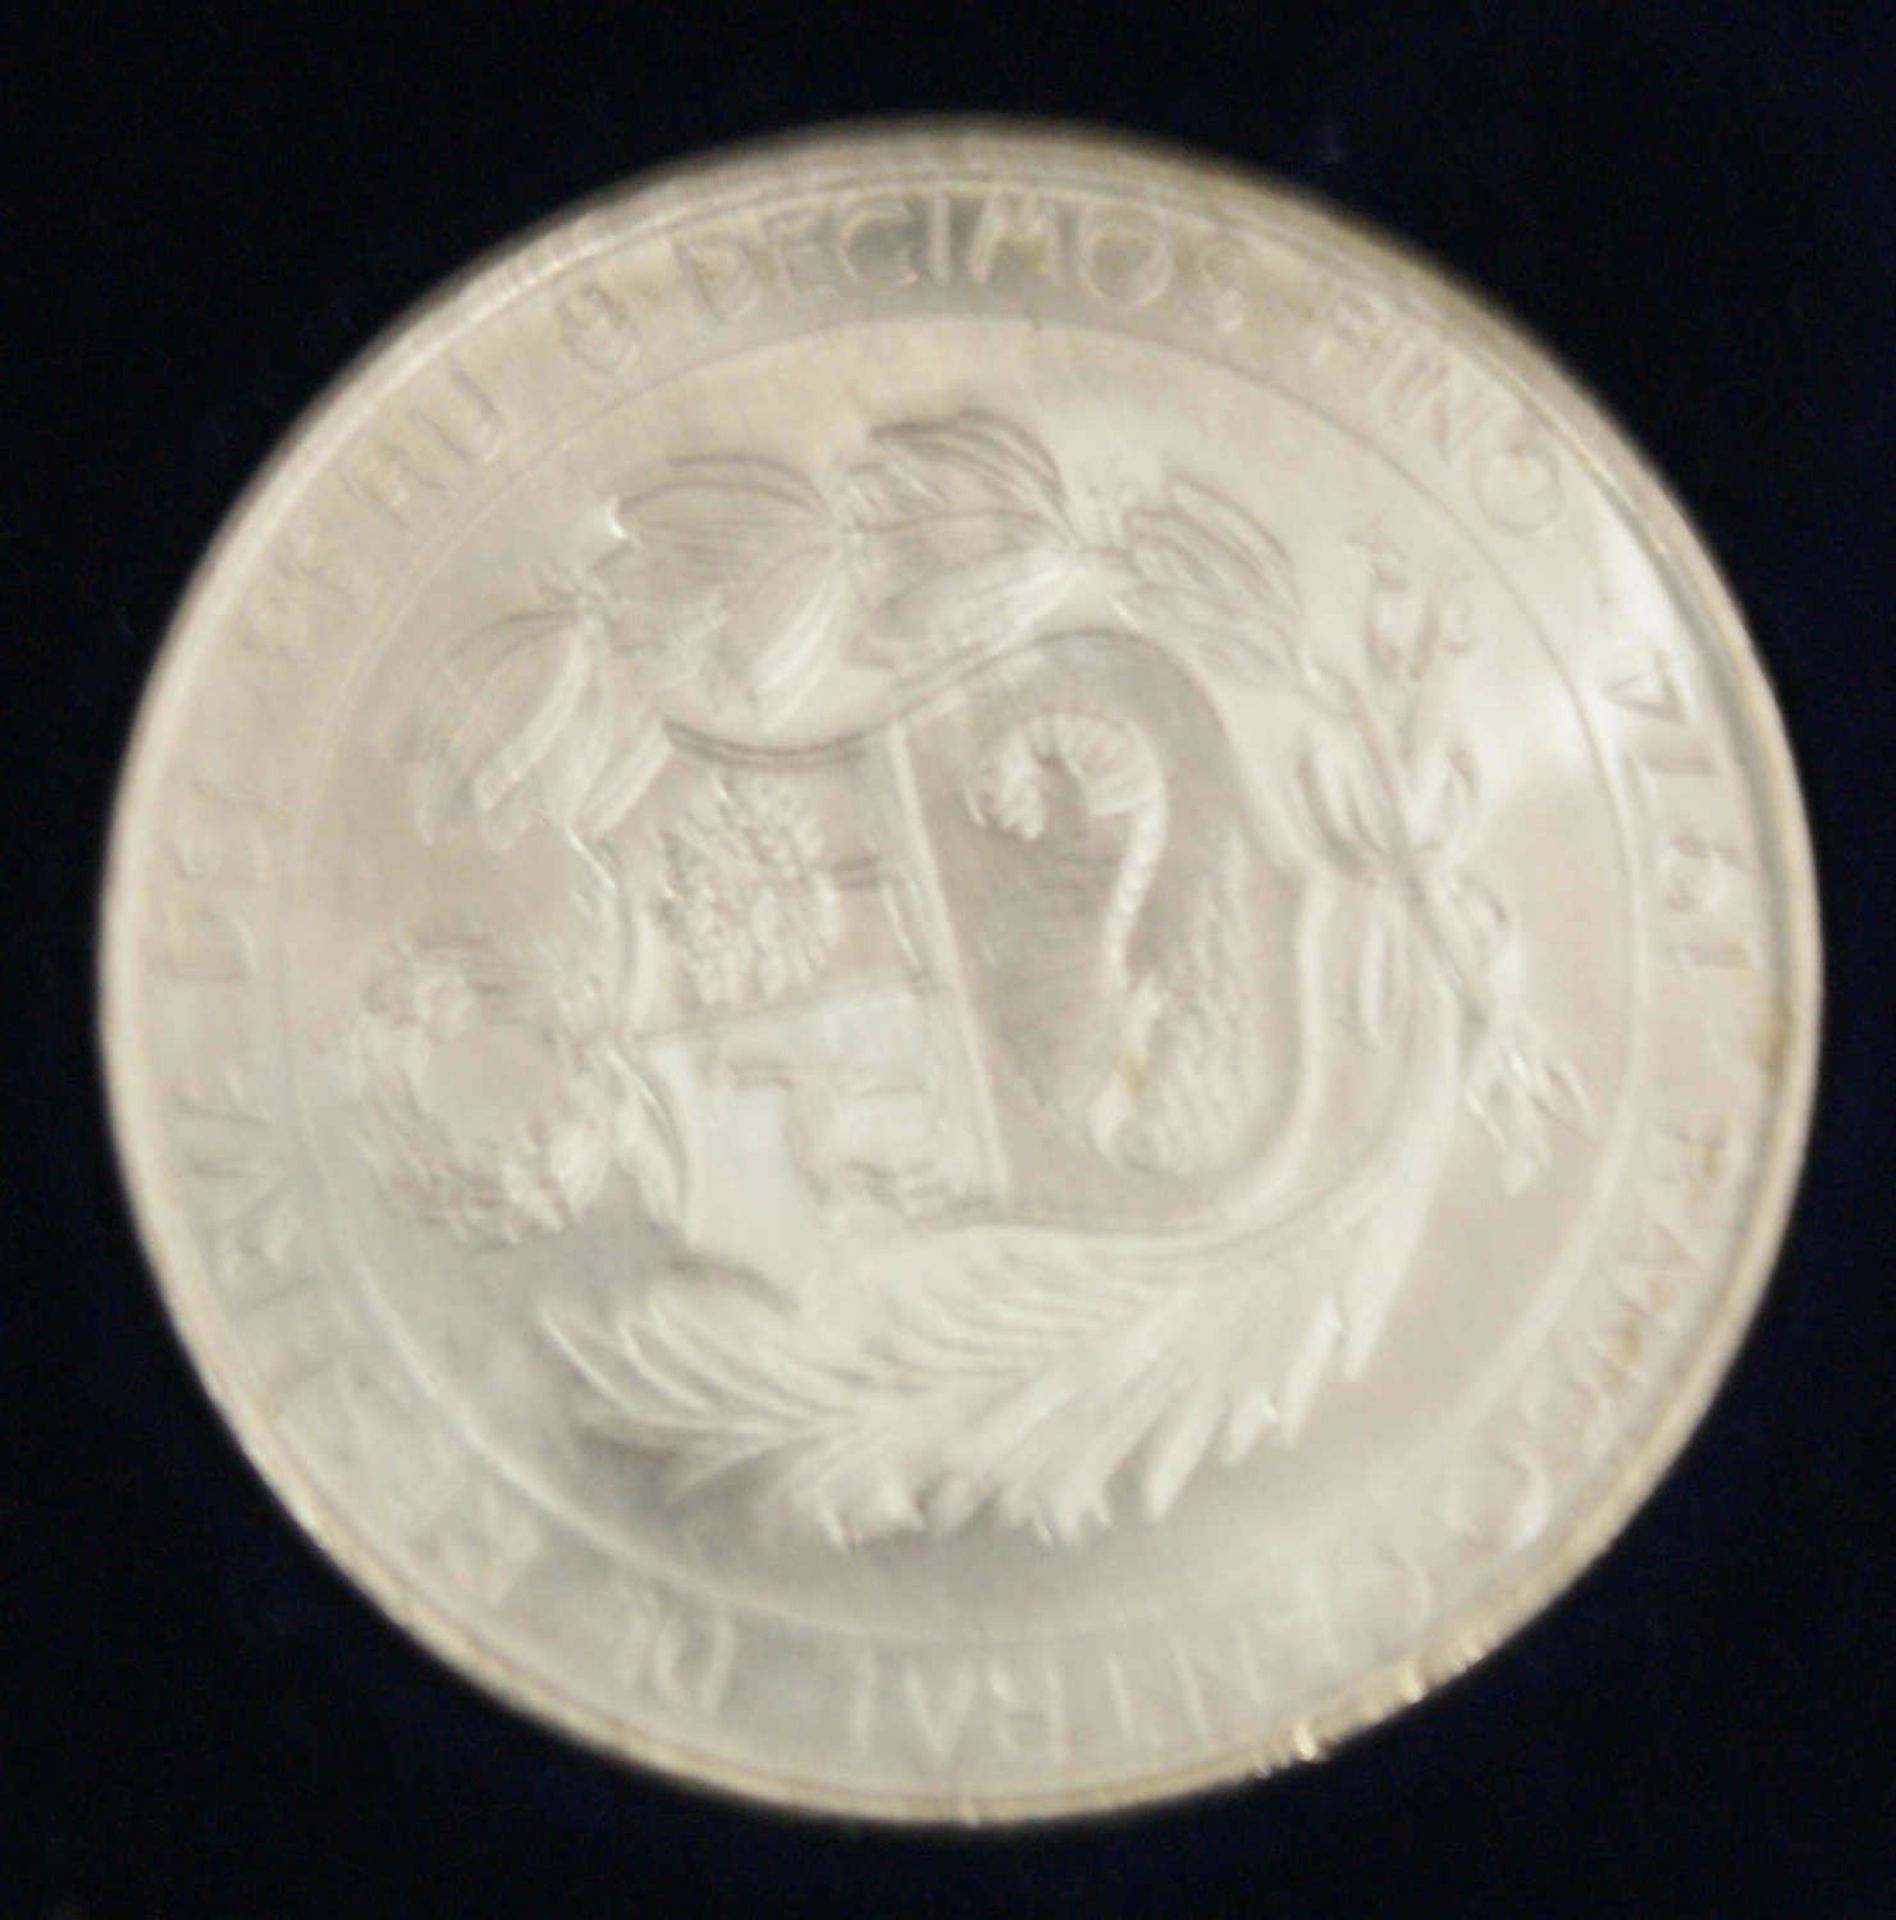 Peru 1974, 200 Soles - Silbermünze "Jorge Chavez und Jose Quinones". Silber 800. Erhaltung: stgl.